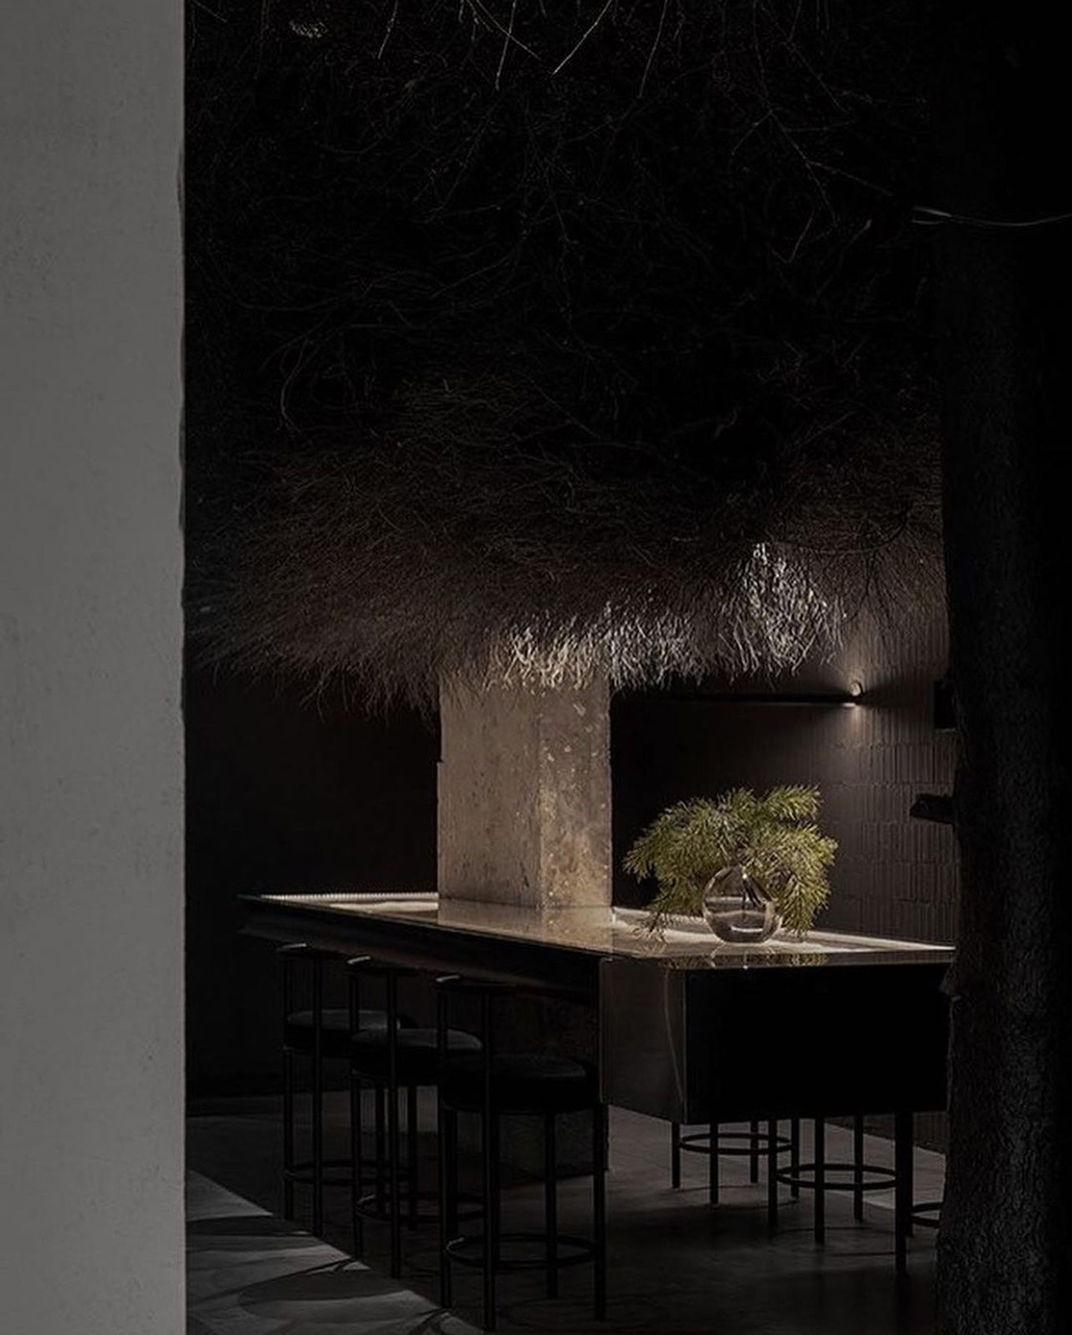 树林里的白天和黑夜概念酒吧 俄罗斯 深圳 珠海 北京 广州 武汉 咖啡店 餐饮商业 logo设计 vi设计 空间设计